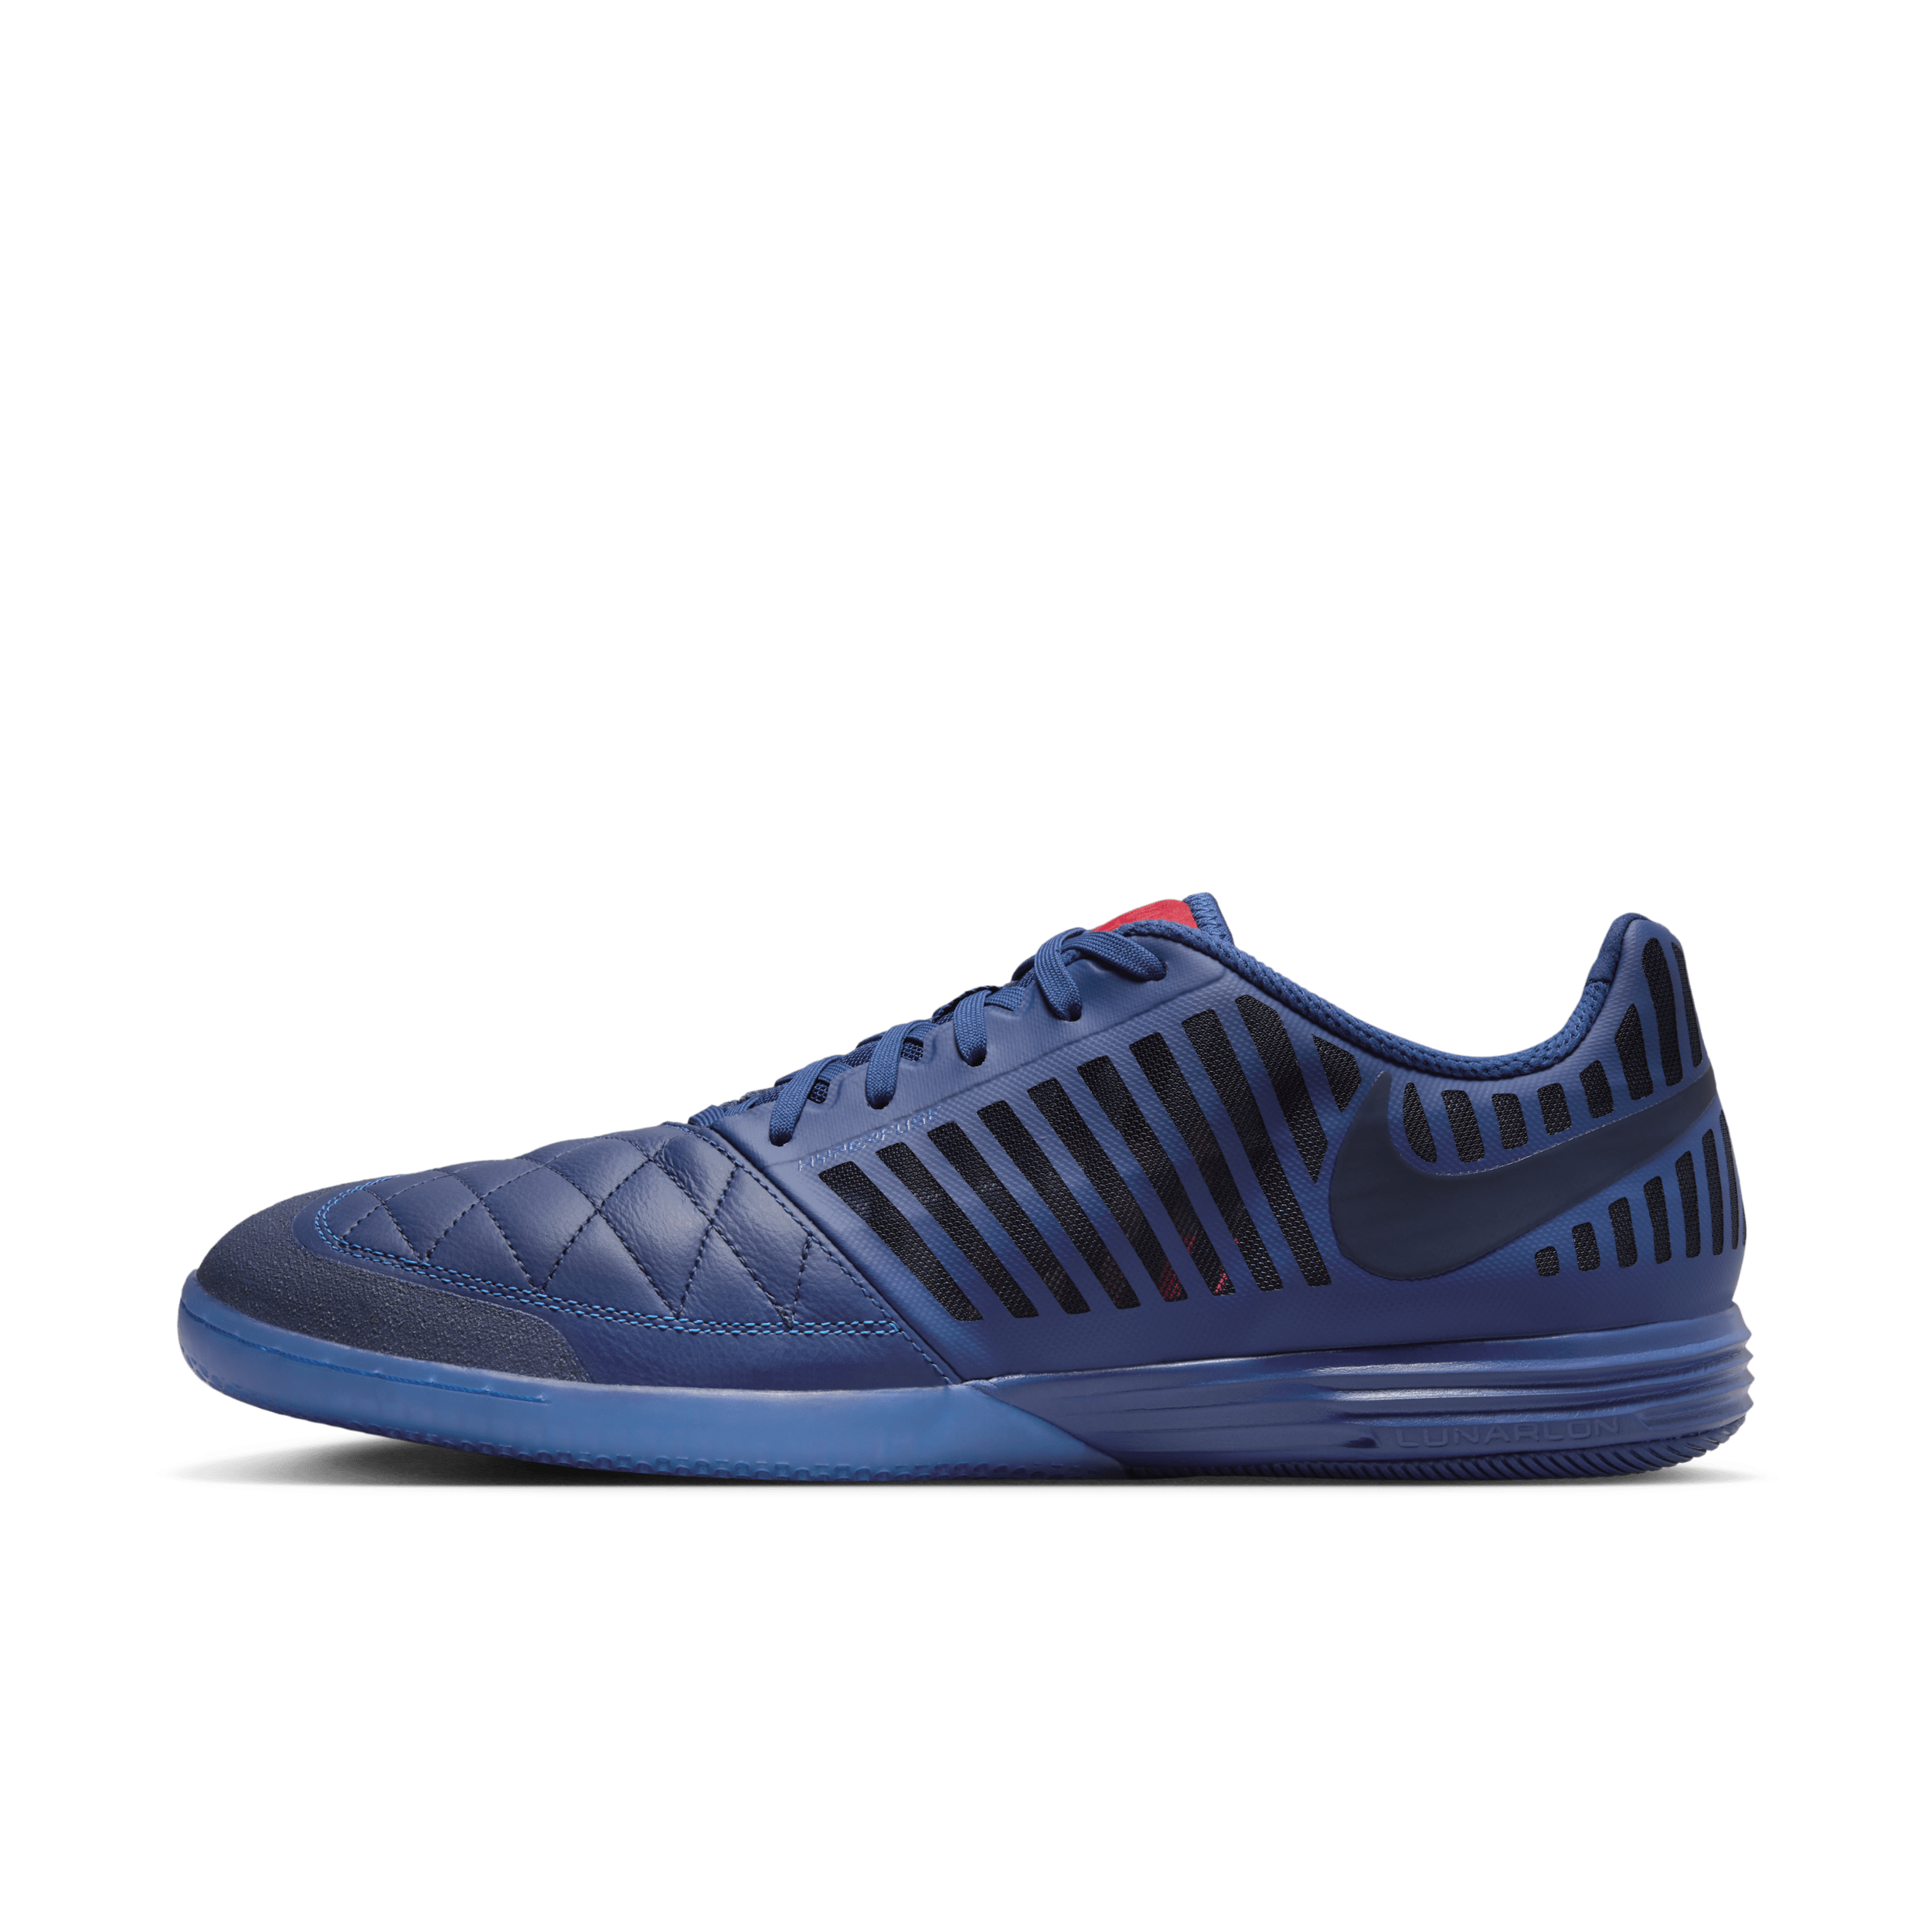 Scarpa da calcio a taglio basso per campi indoor/cemento Nike Lunargato II - Blu